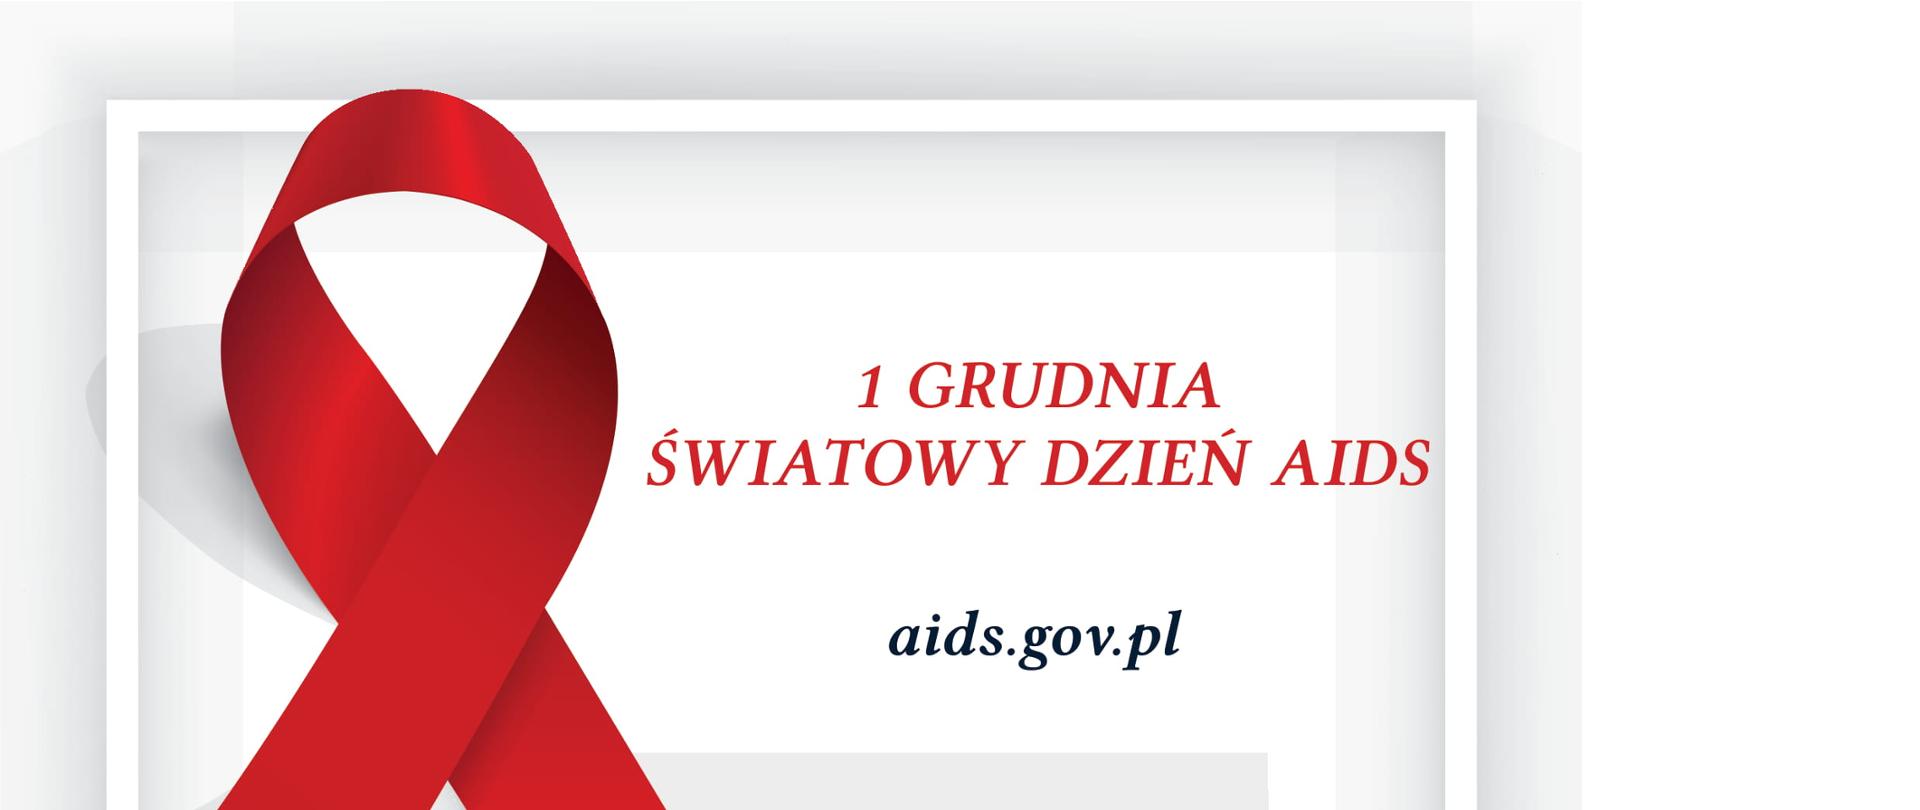 Zdjęcie przedstawia Czerwoną Kokardkę oraz napis 1 Grudnia Światowy Dzień Aids.Podany jest adres strony aids.gov.pl